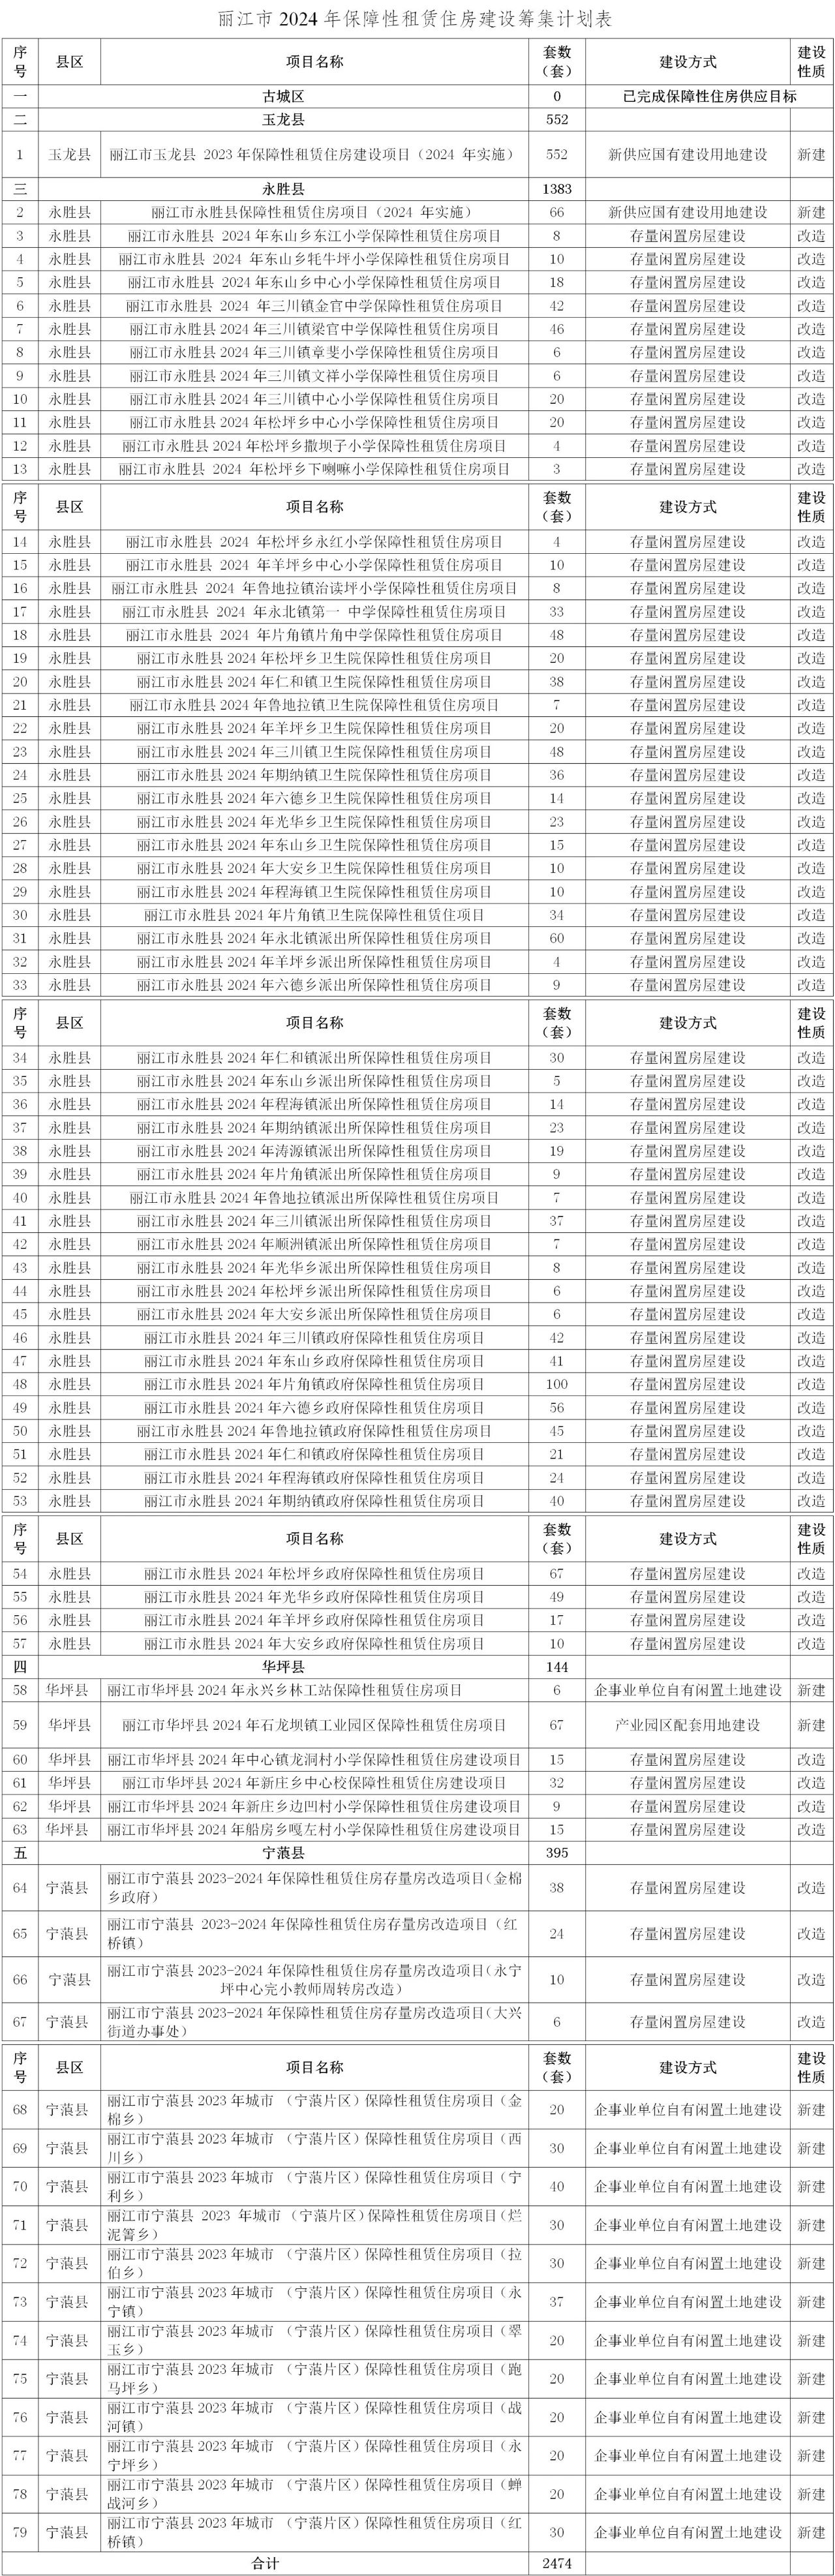 今年丽江计划新开工建设保障性（租赁）住房1008套，商品住房3238套……